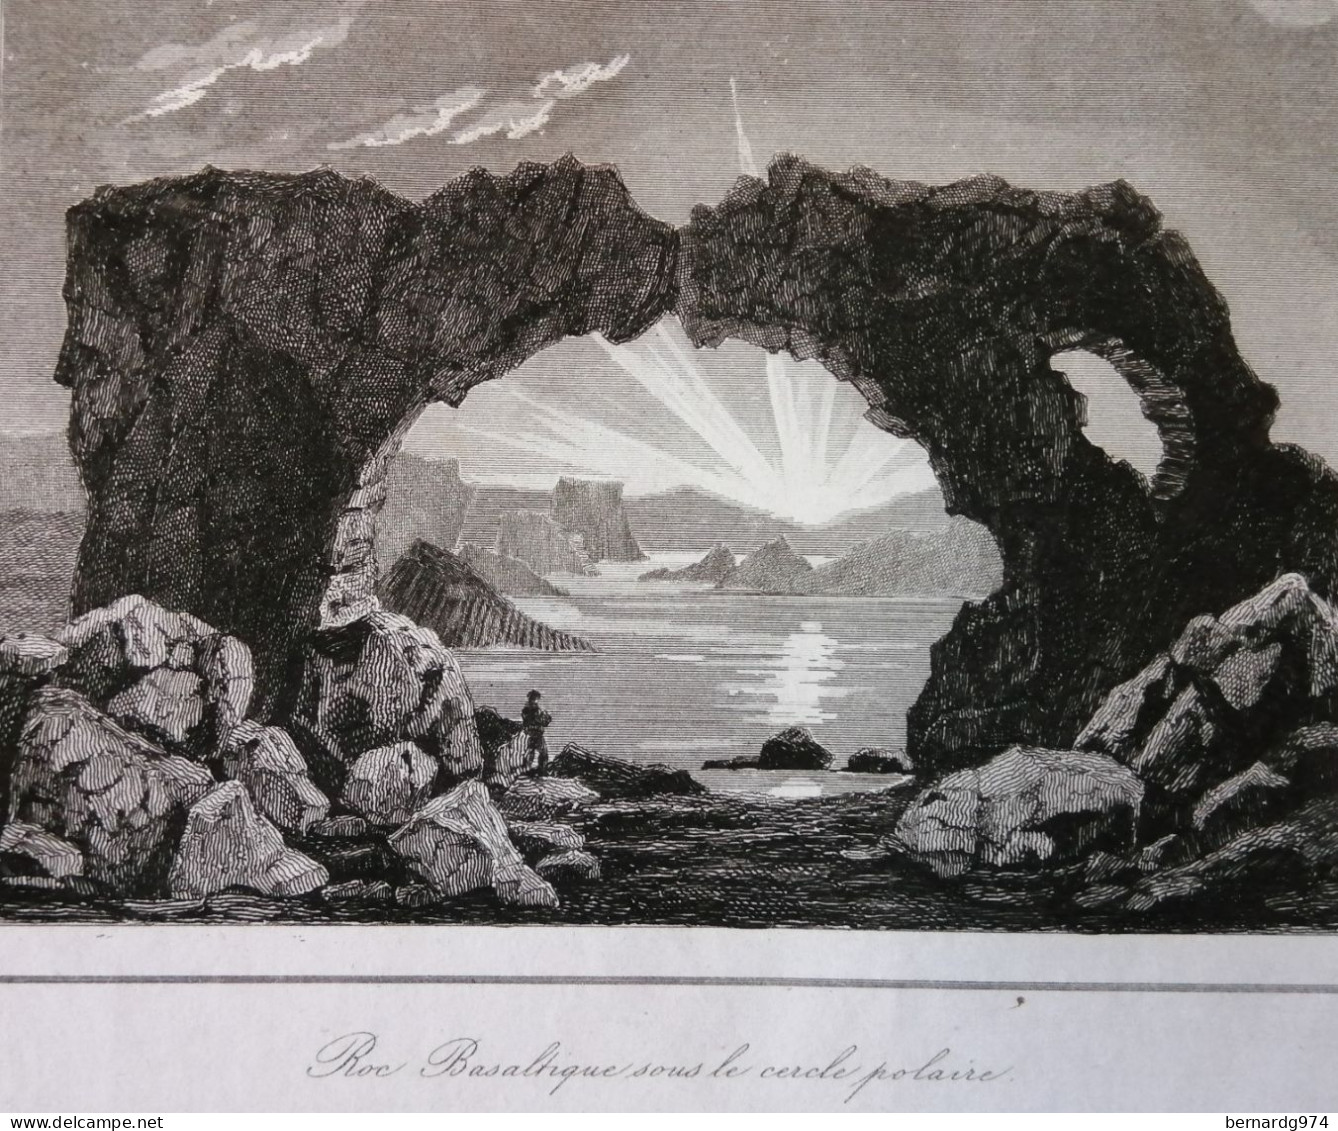 Islande Island : Nine Antique Prints - Cartes Géographiques